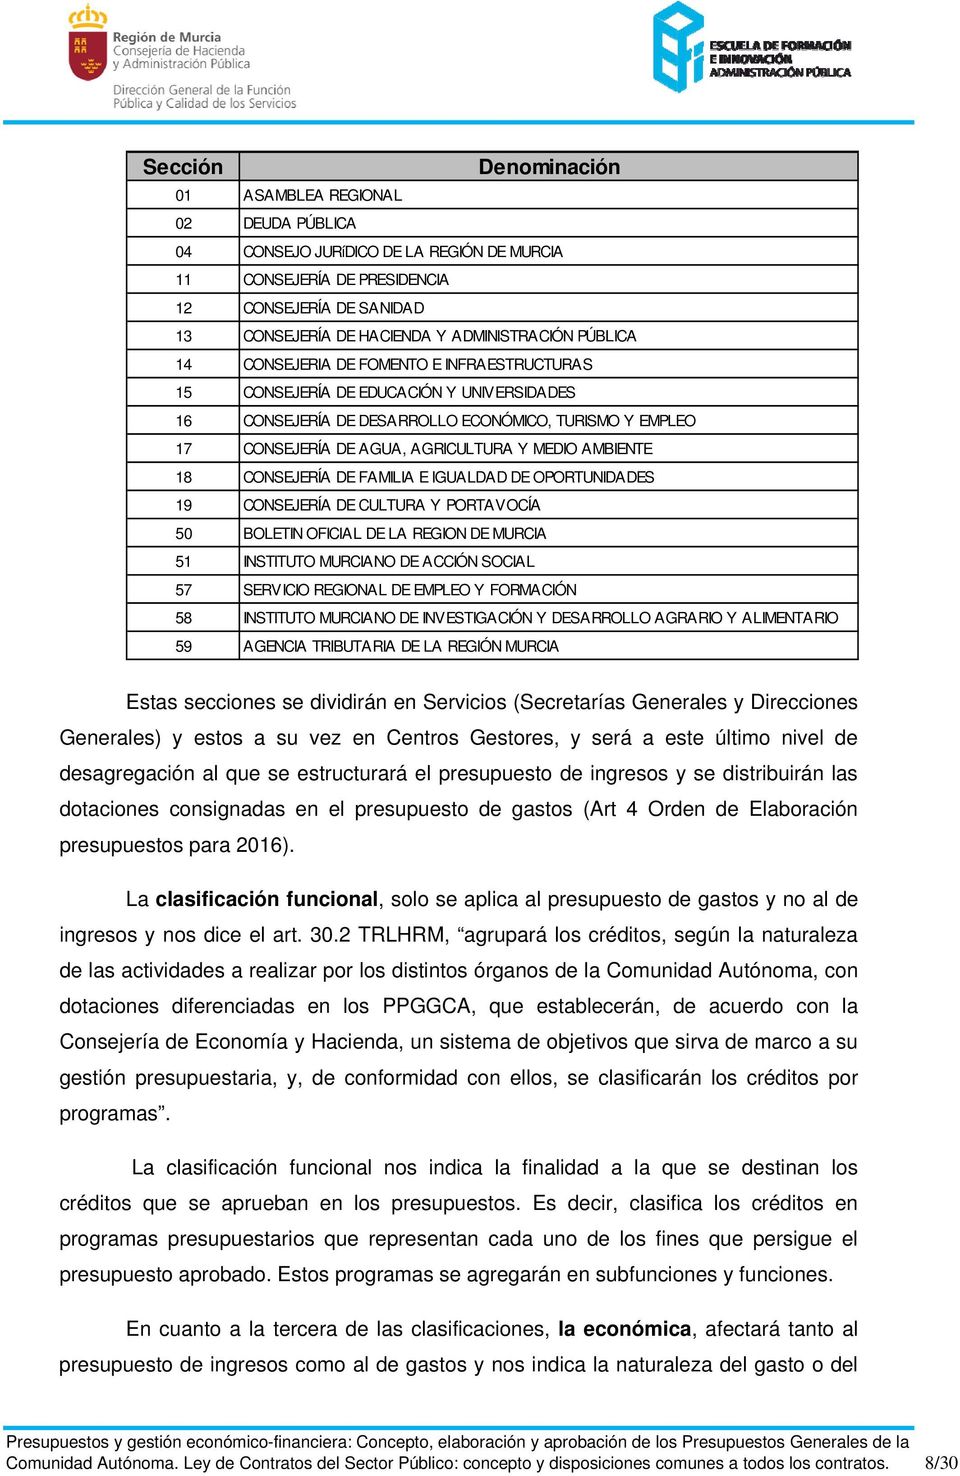 AMBIENTE 18 CONSEJERÍA DE FAMILIA E IGUALDAD DE OPORTUNIDADES 19 CONSEJERÍA DE CULTURA Y PORTAVOCÍA 50 BOLETIN OFICIAL DE LA REGION DE MURCIA 51 INSTITUTO MURCIANO DE ACCIÓN SOCIAL 57 SERVICIO